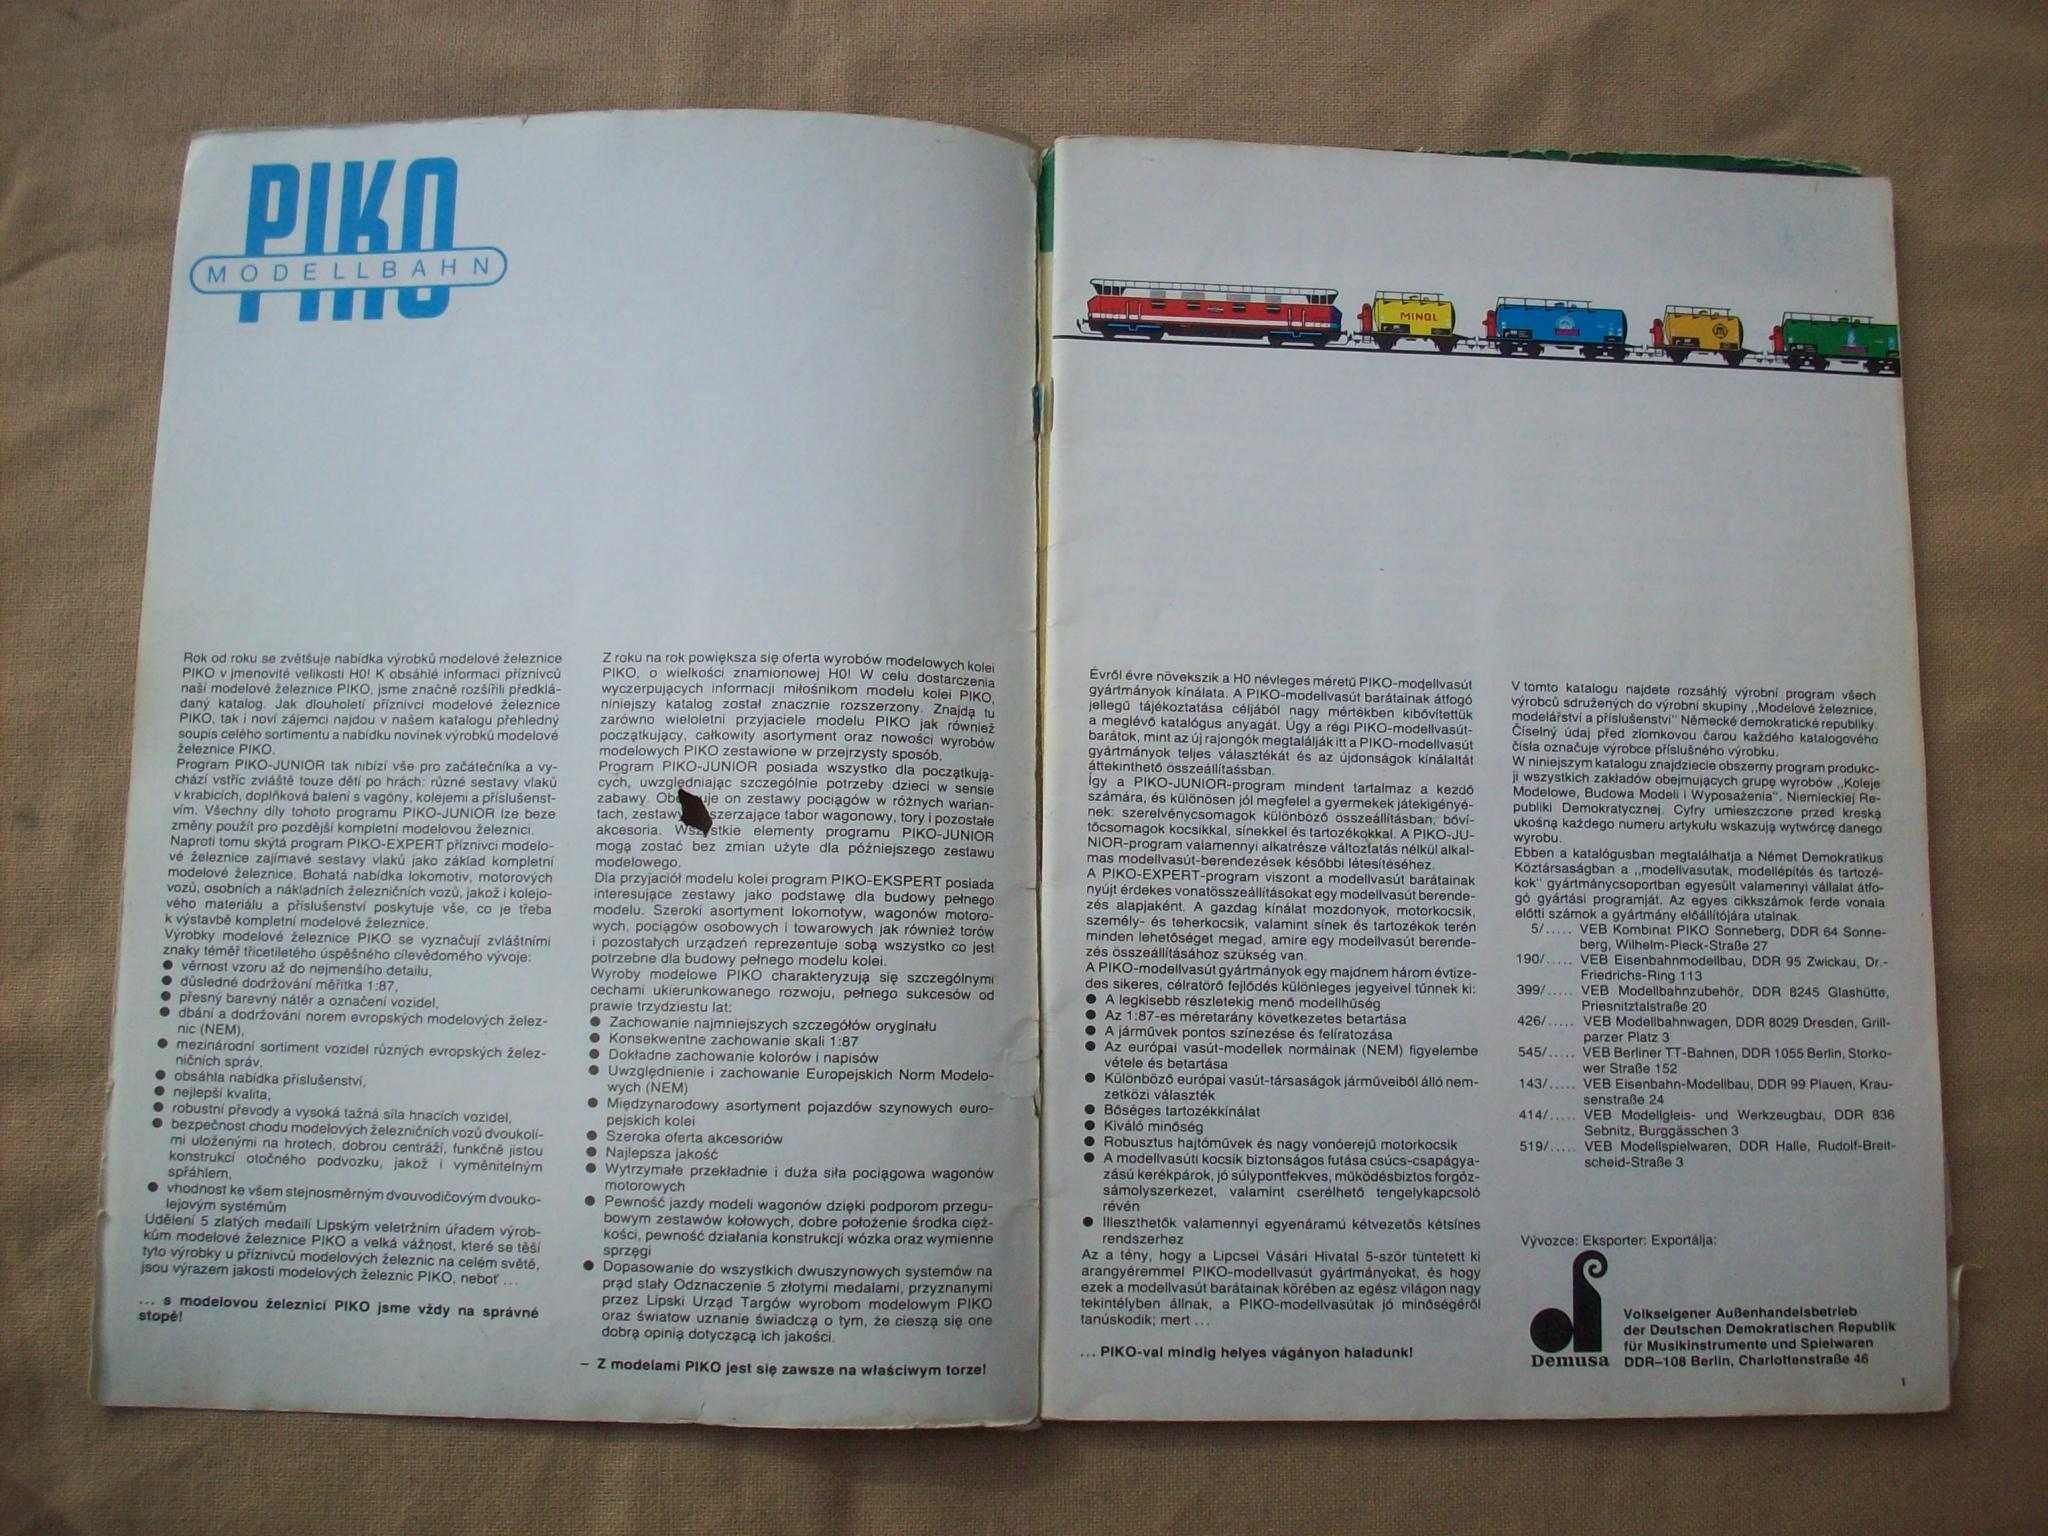 PIKO HO Modellbahn katalog, stary, używany, podniszczony.